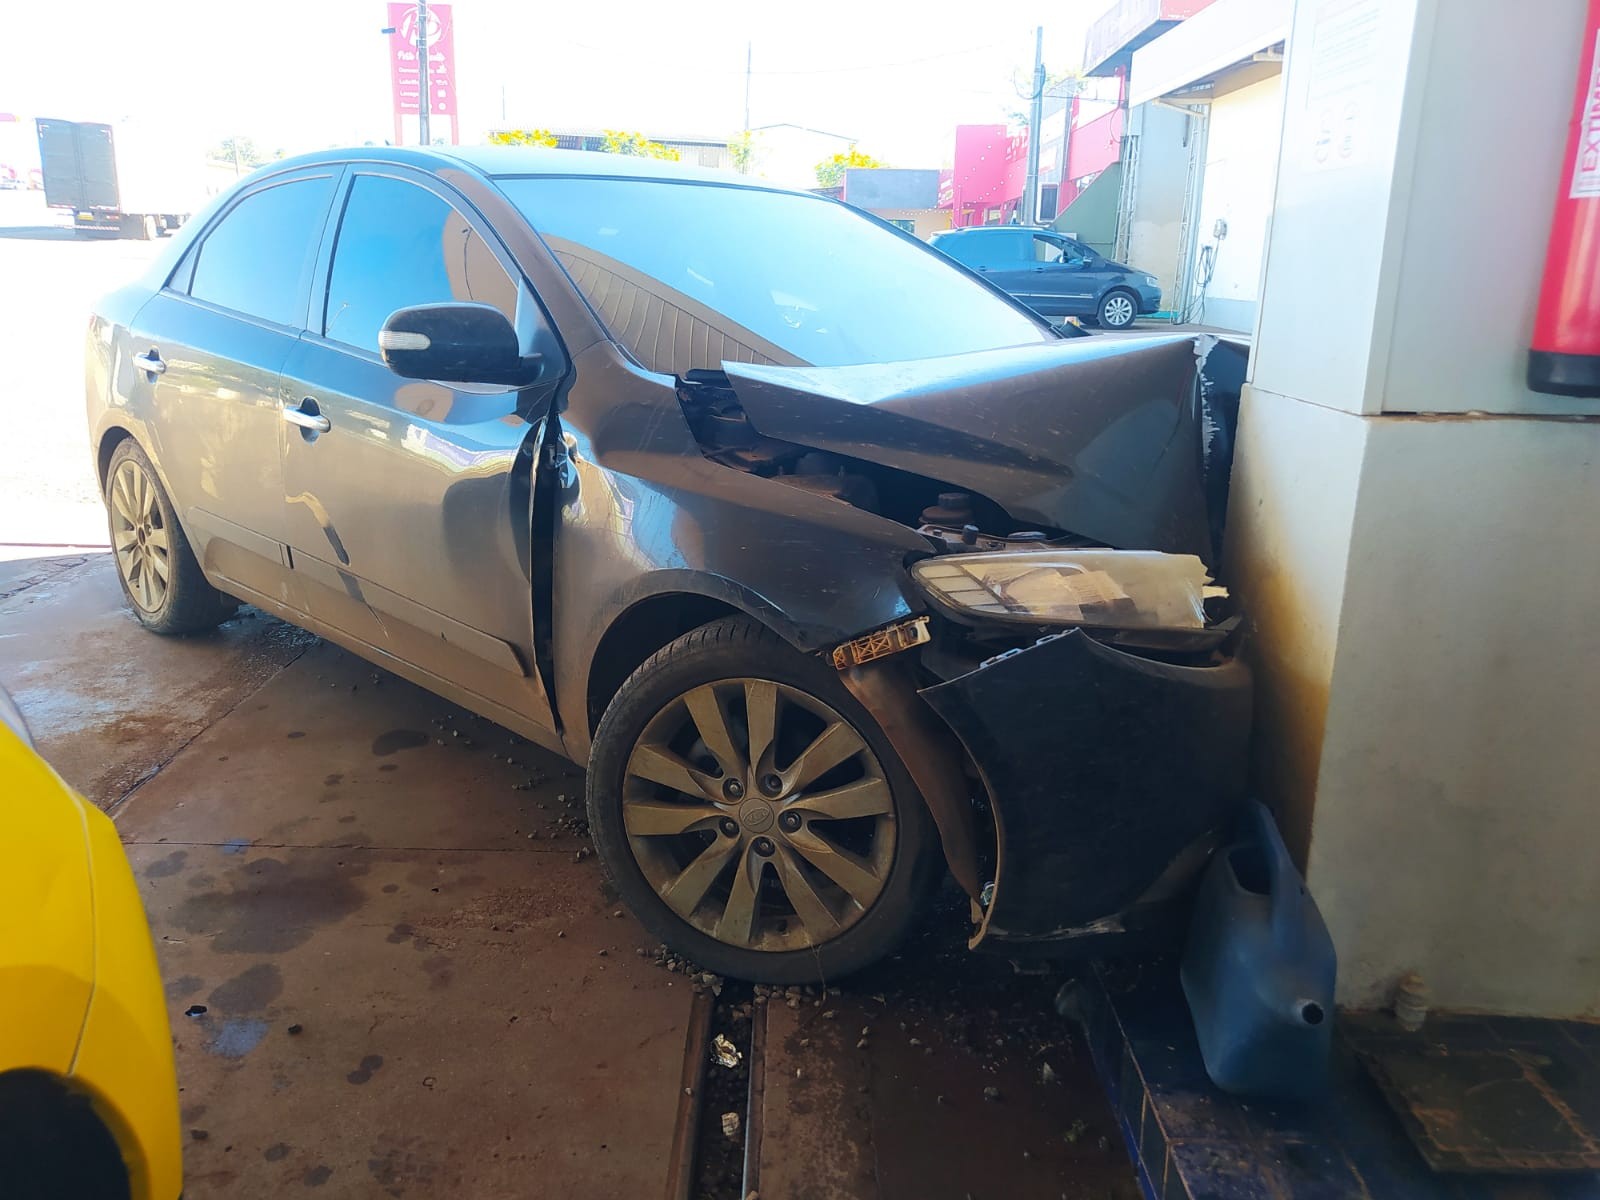 VÍDEO: suspeitos de roubo batem carro contra posto de combustíveis em perseguição policial no Paraná